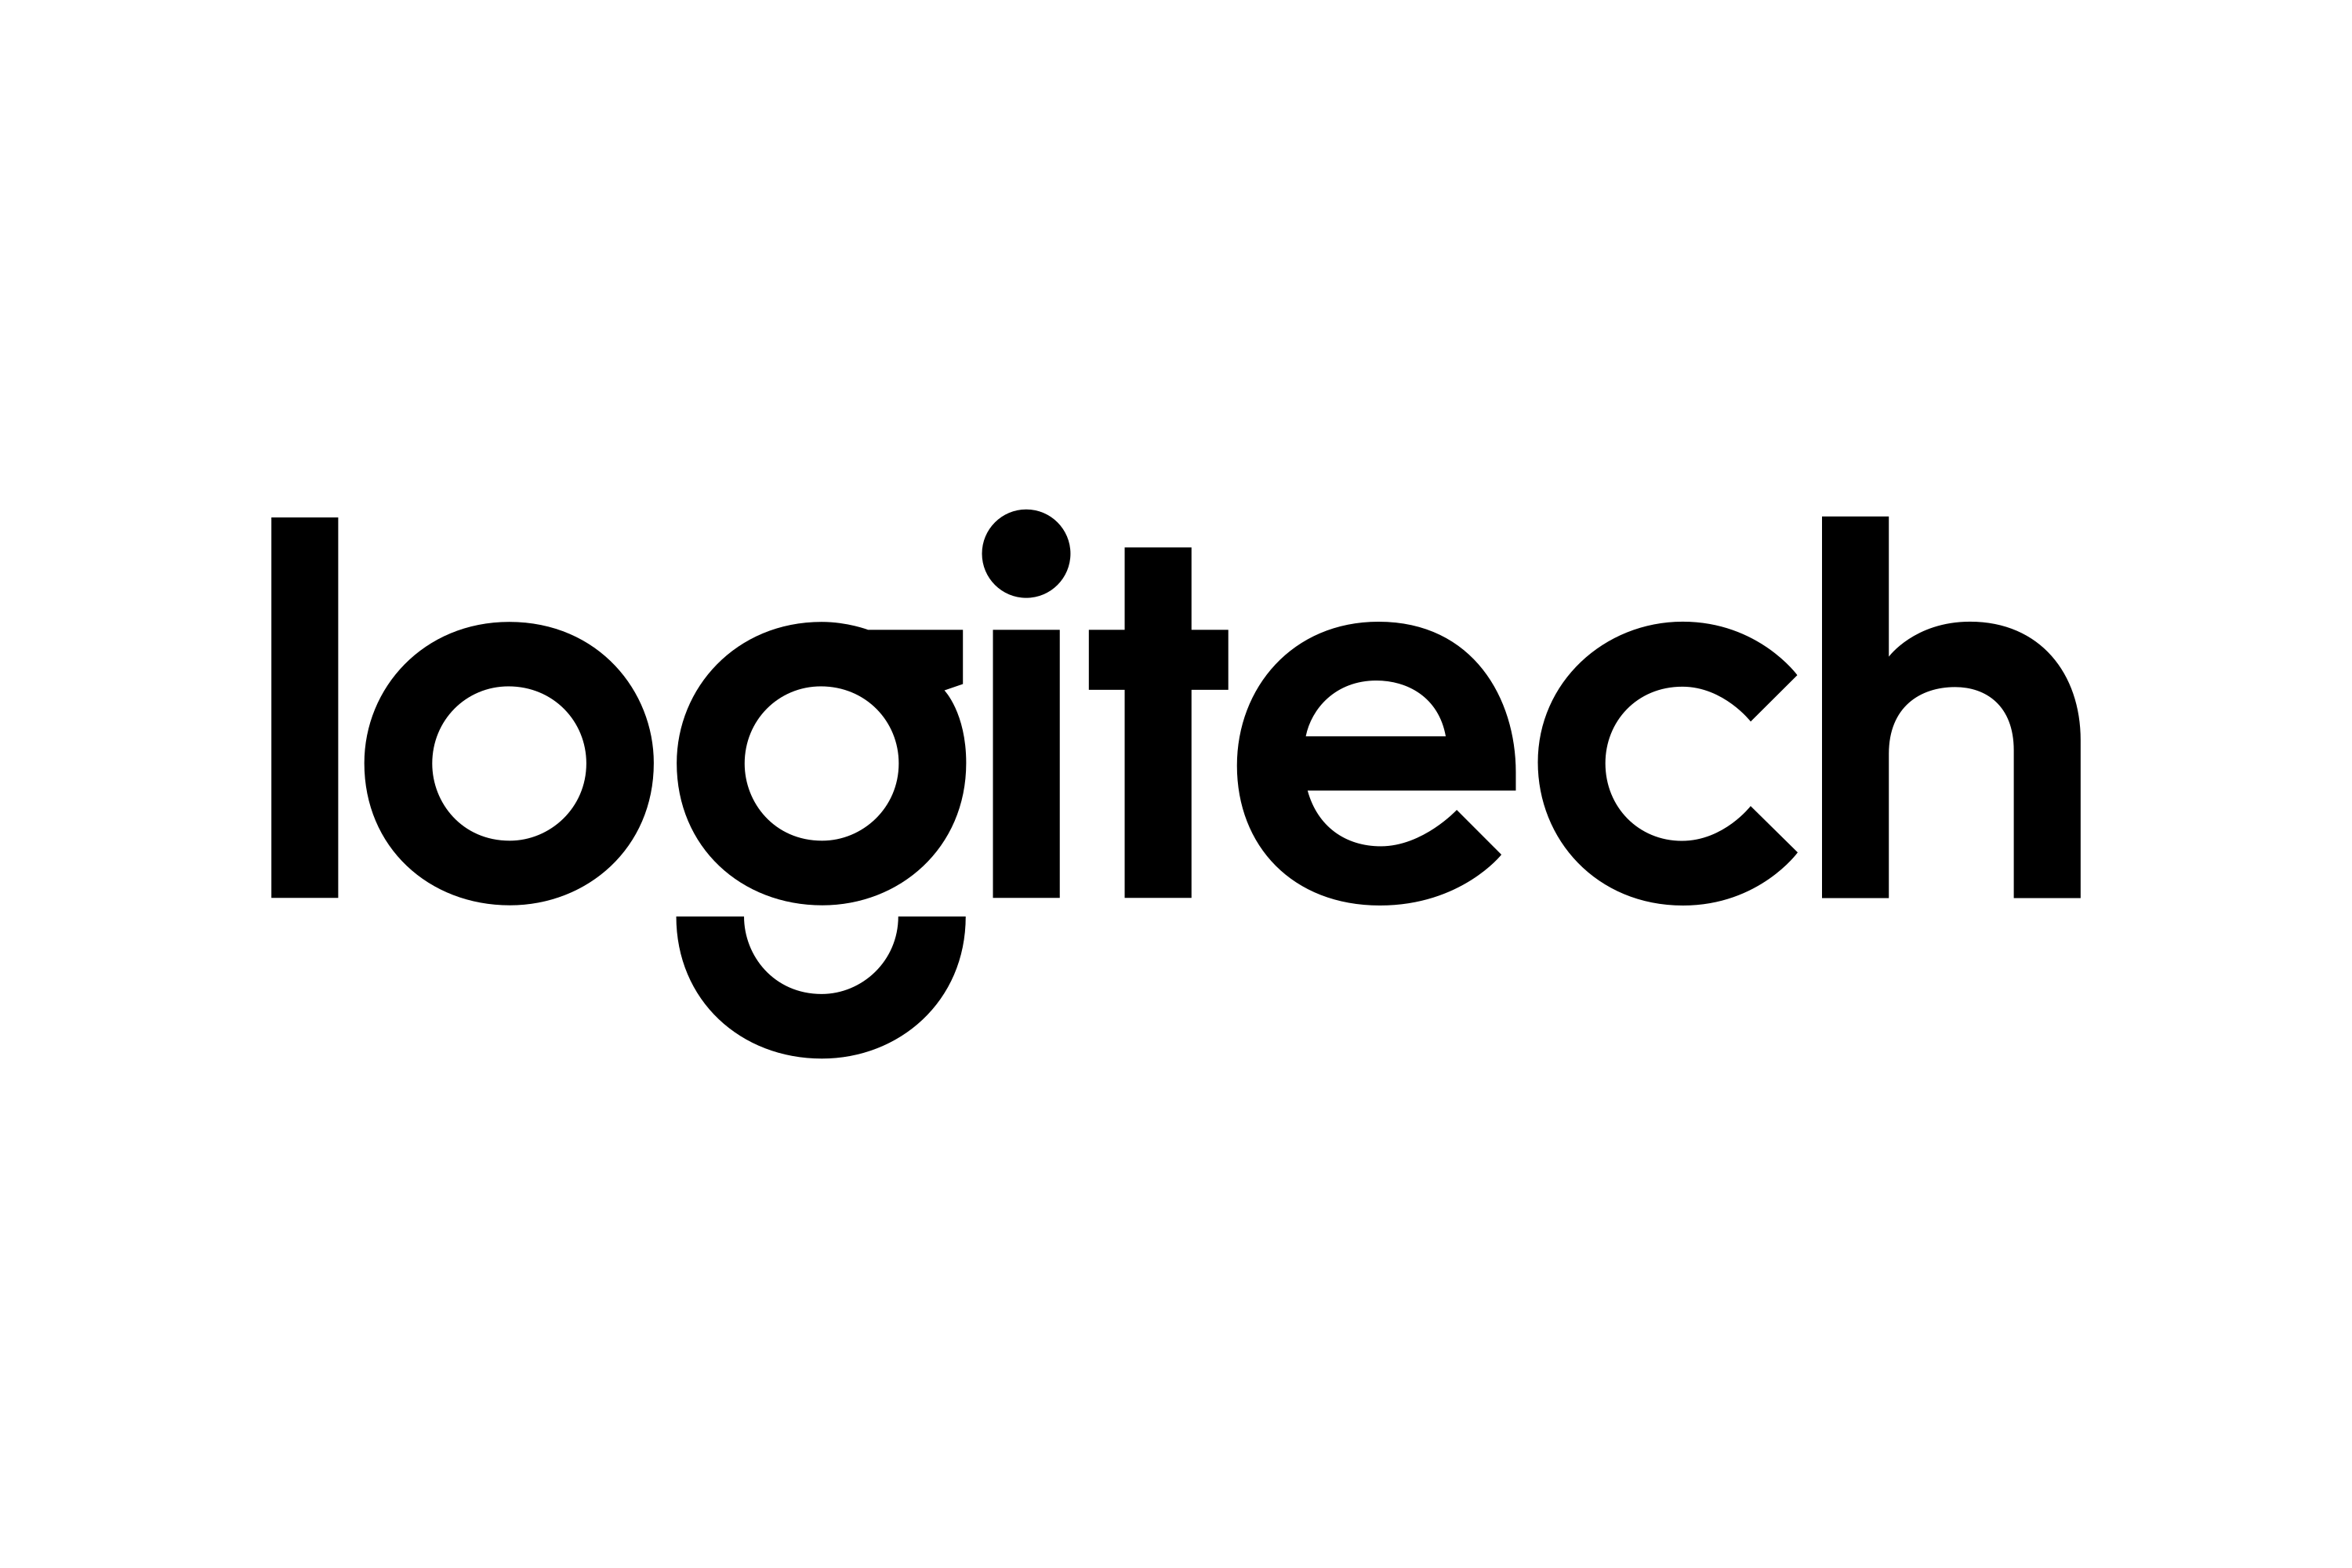 Download Logitech Logo in SVG Vector or PNG File Format - Logo.wine